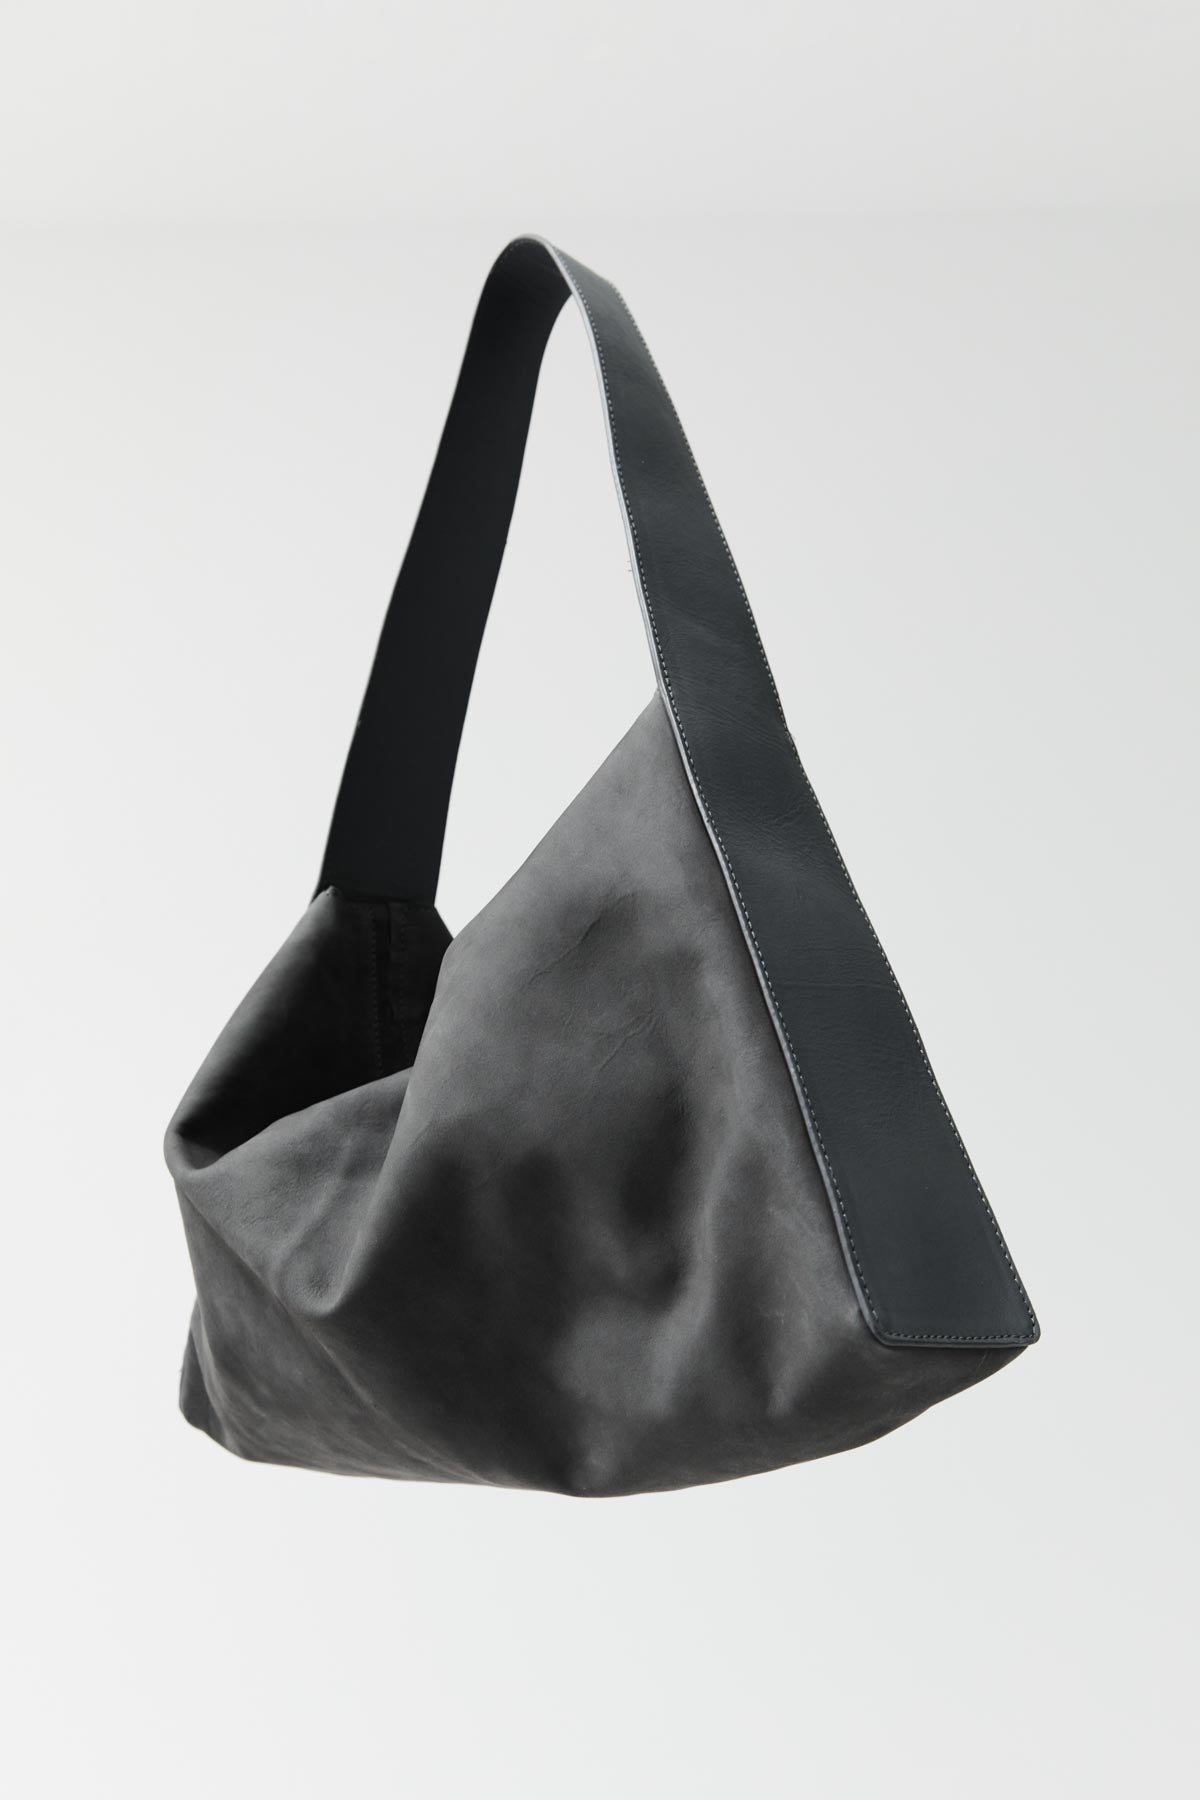 PRE-ORDER: Soft Form Bag - Pewter Grey